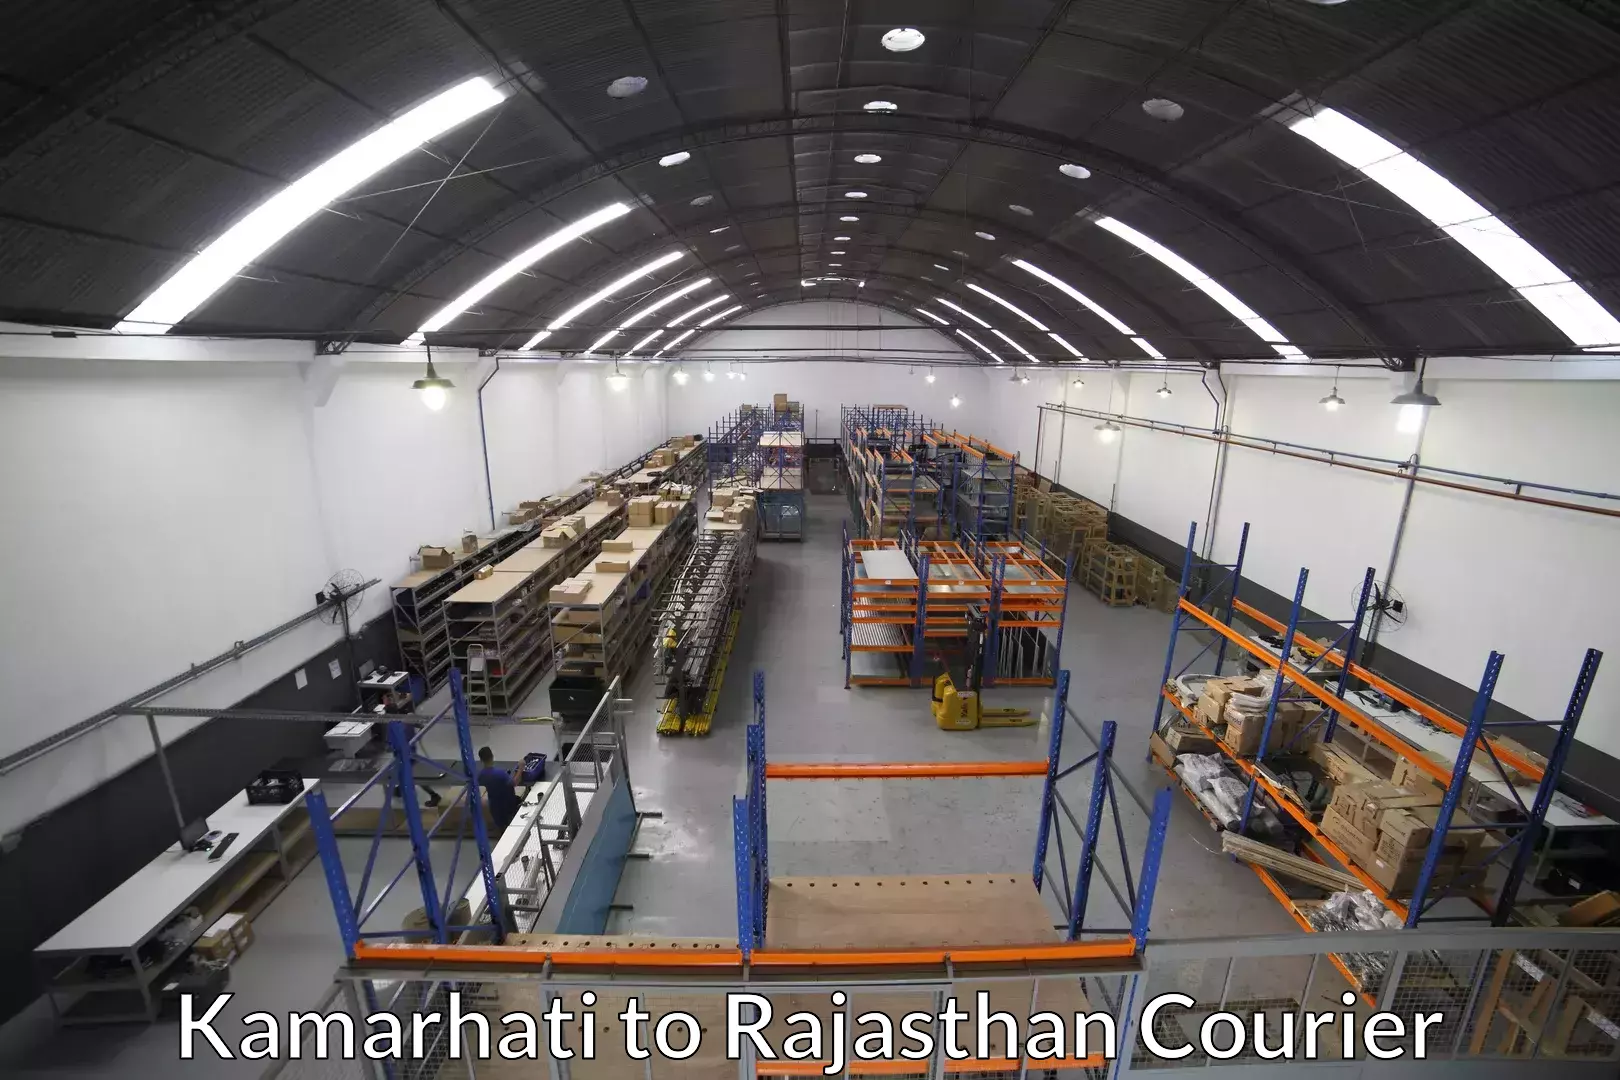 Reliable movers Kamarhati to Rajasthan